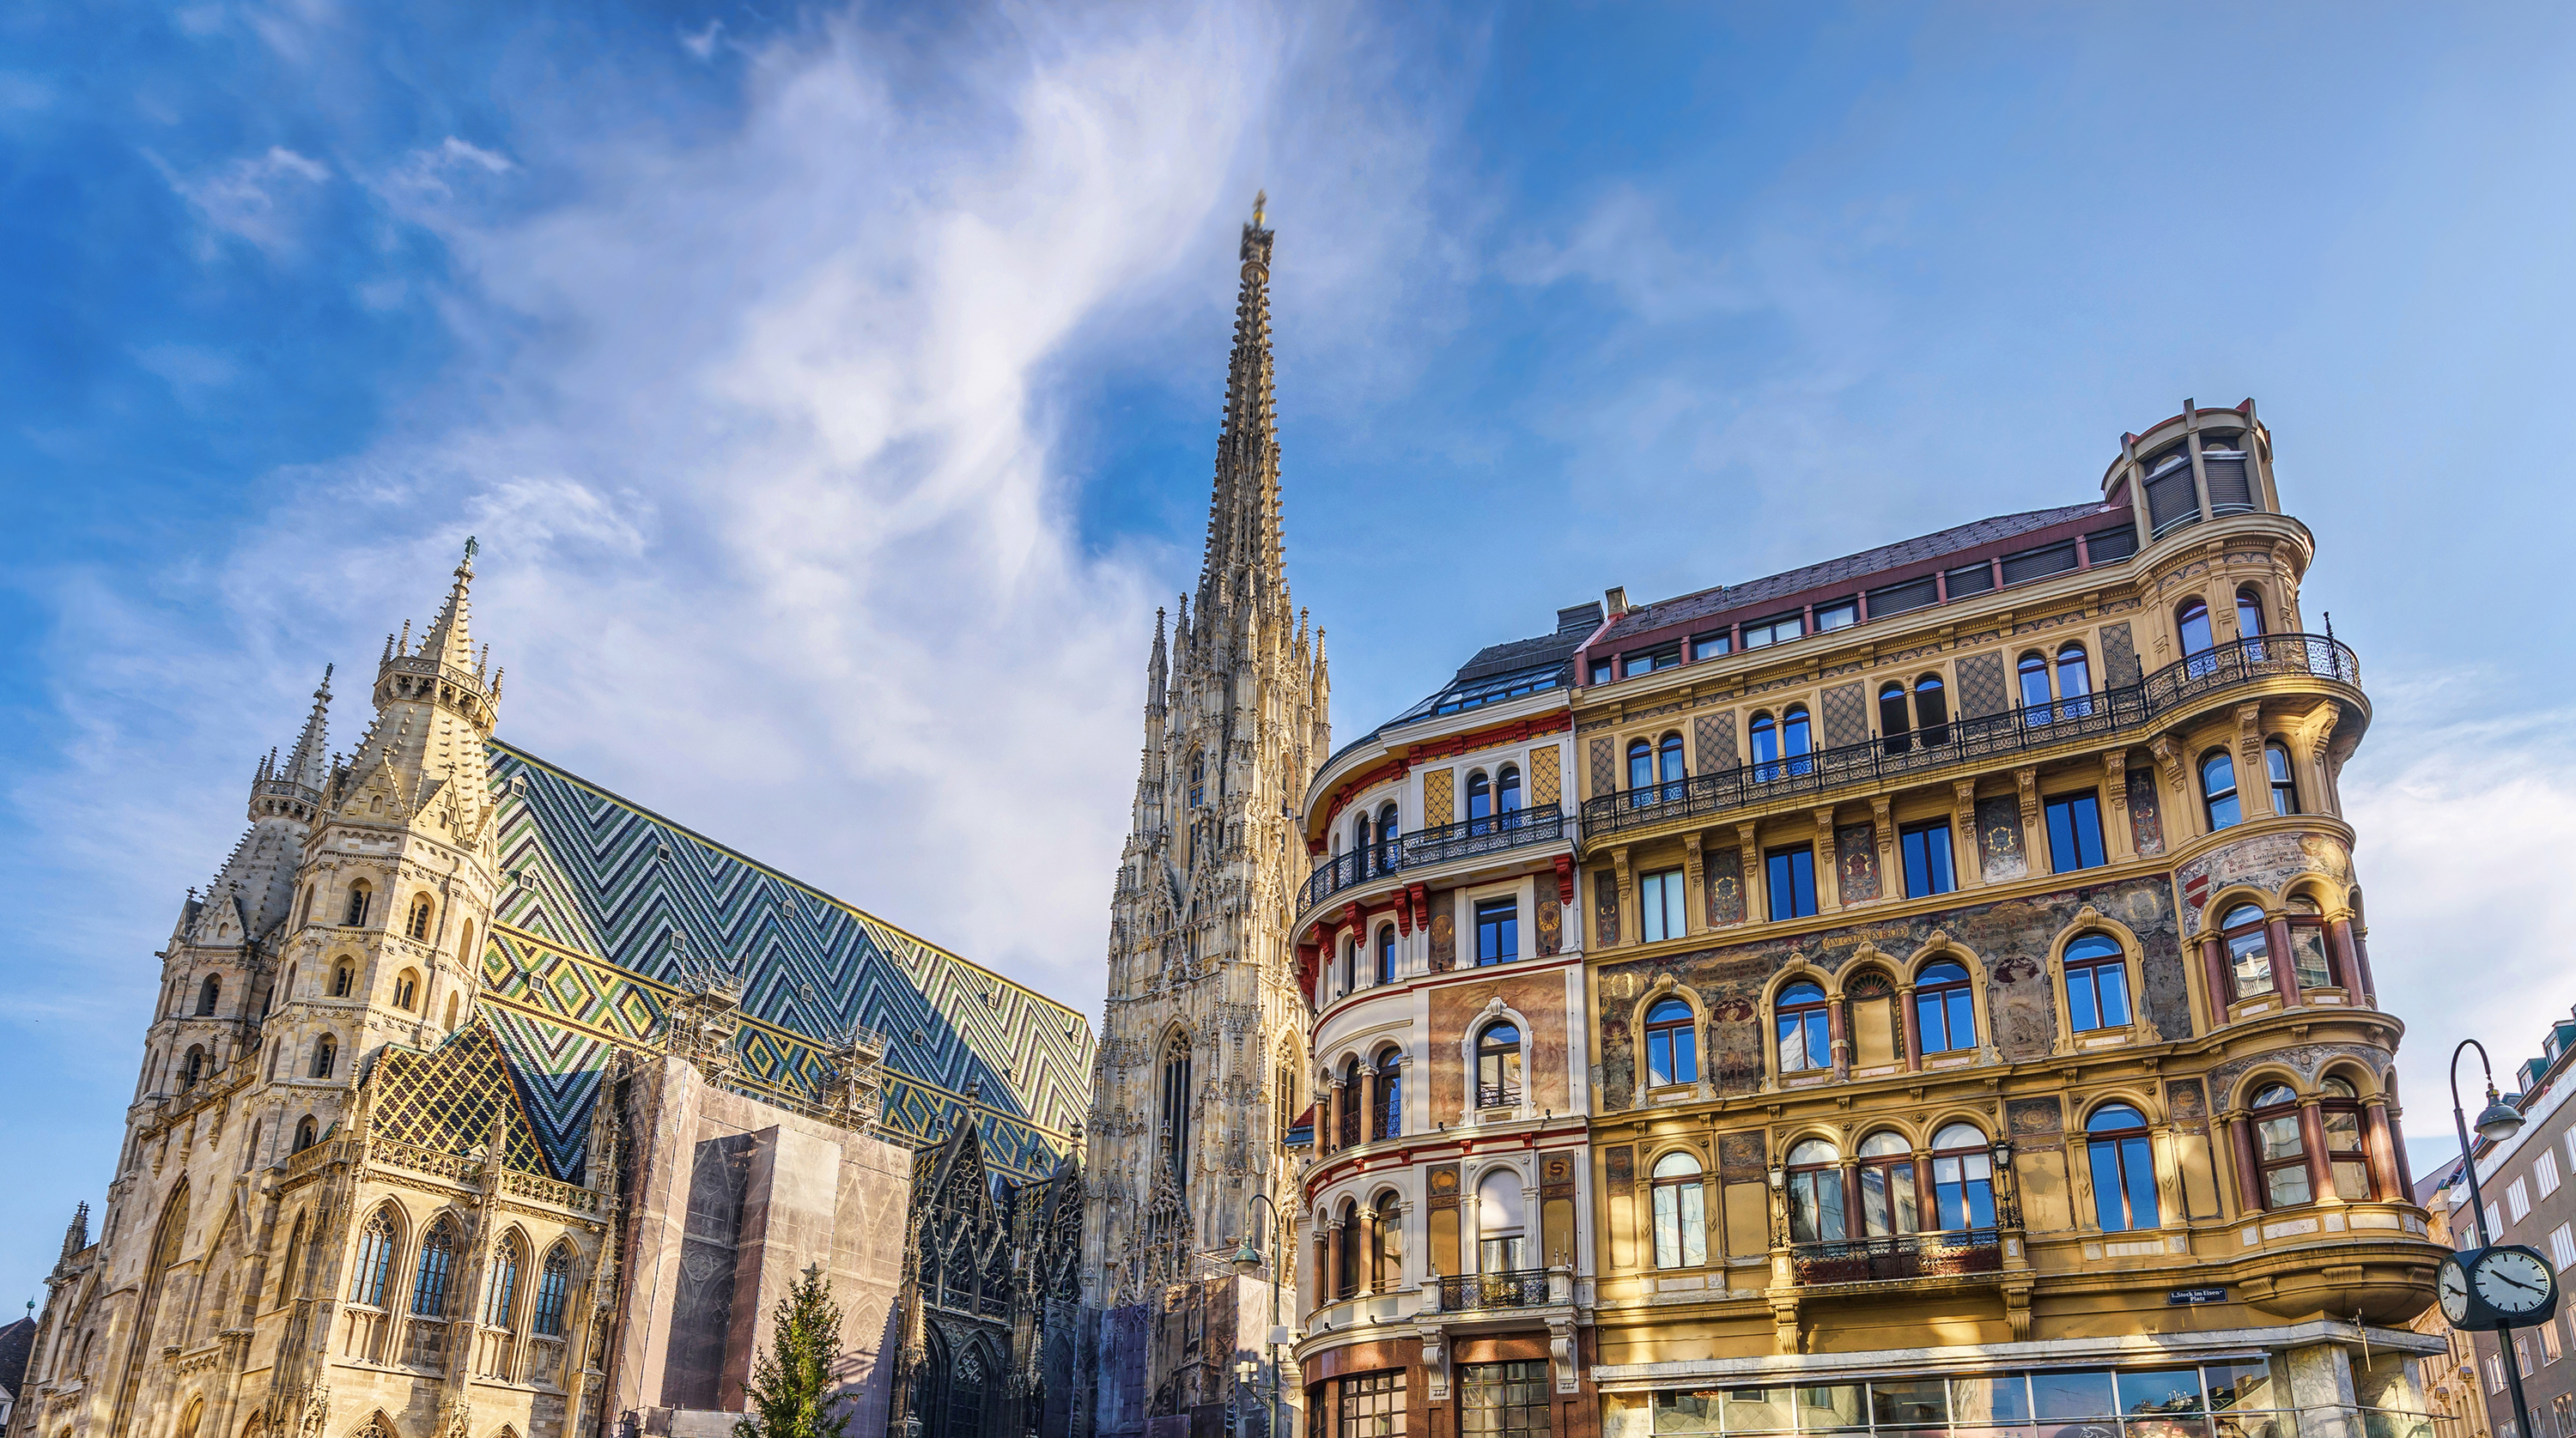 Saint stephen cathedral on stephansplatz in vienna photo